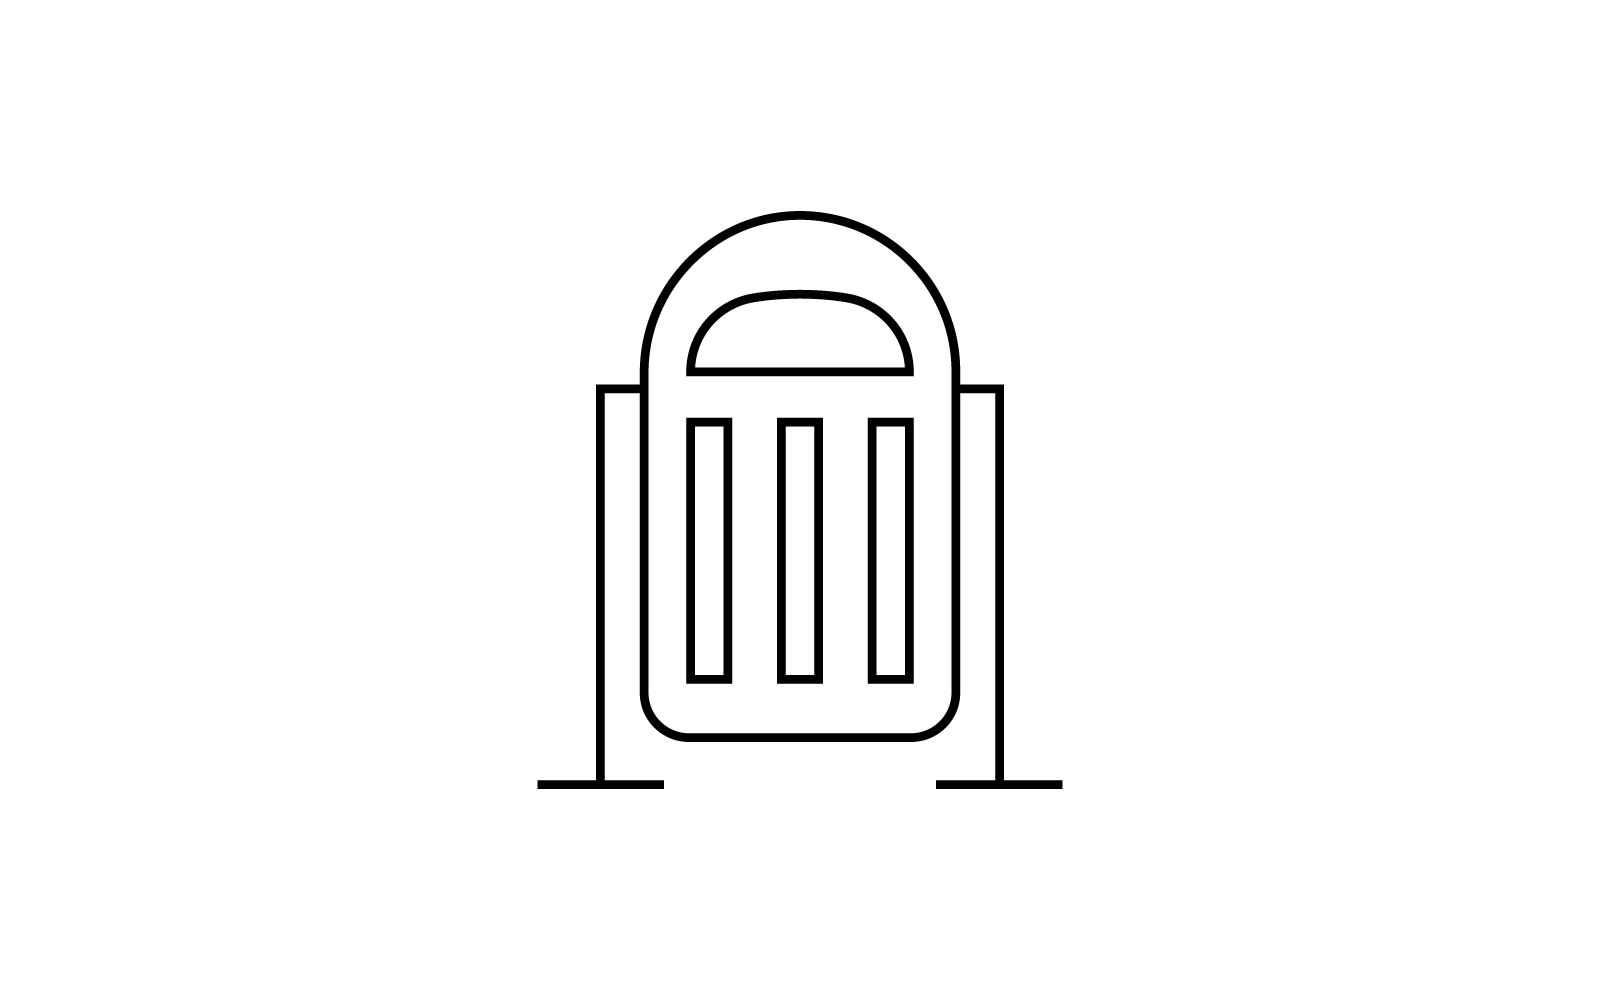 Trash basket icon vector illustration design template